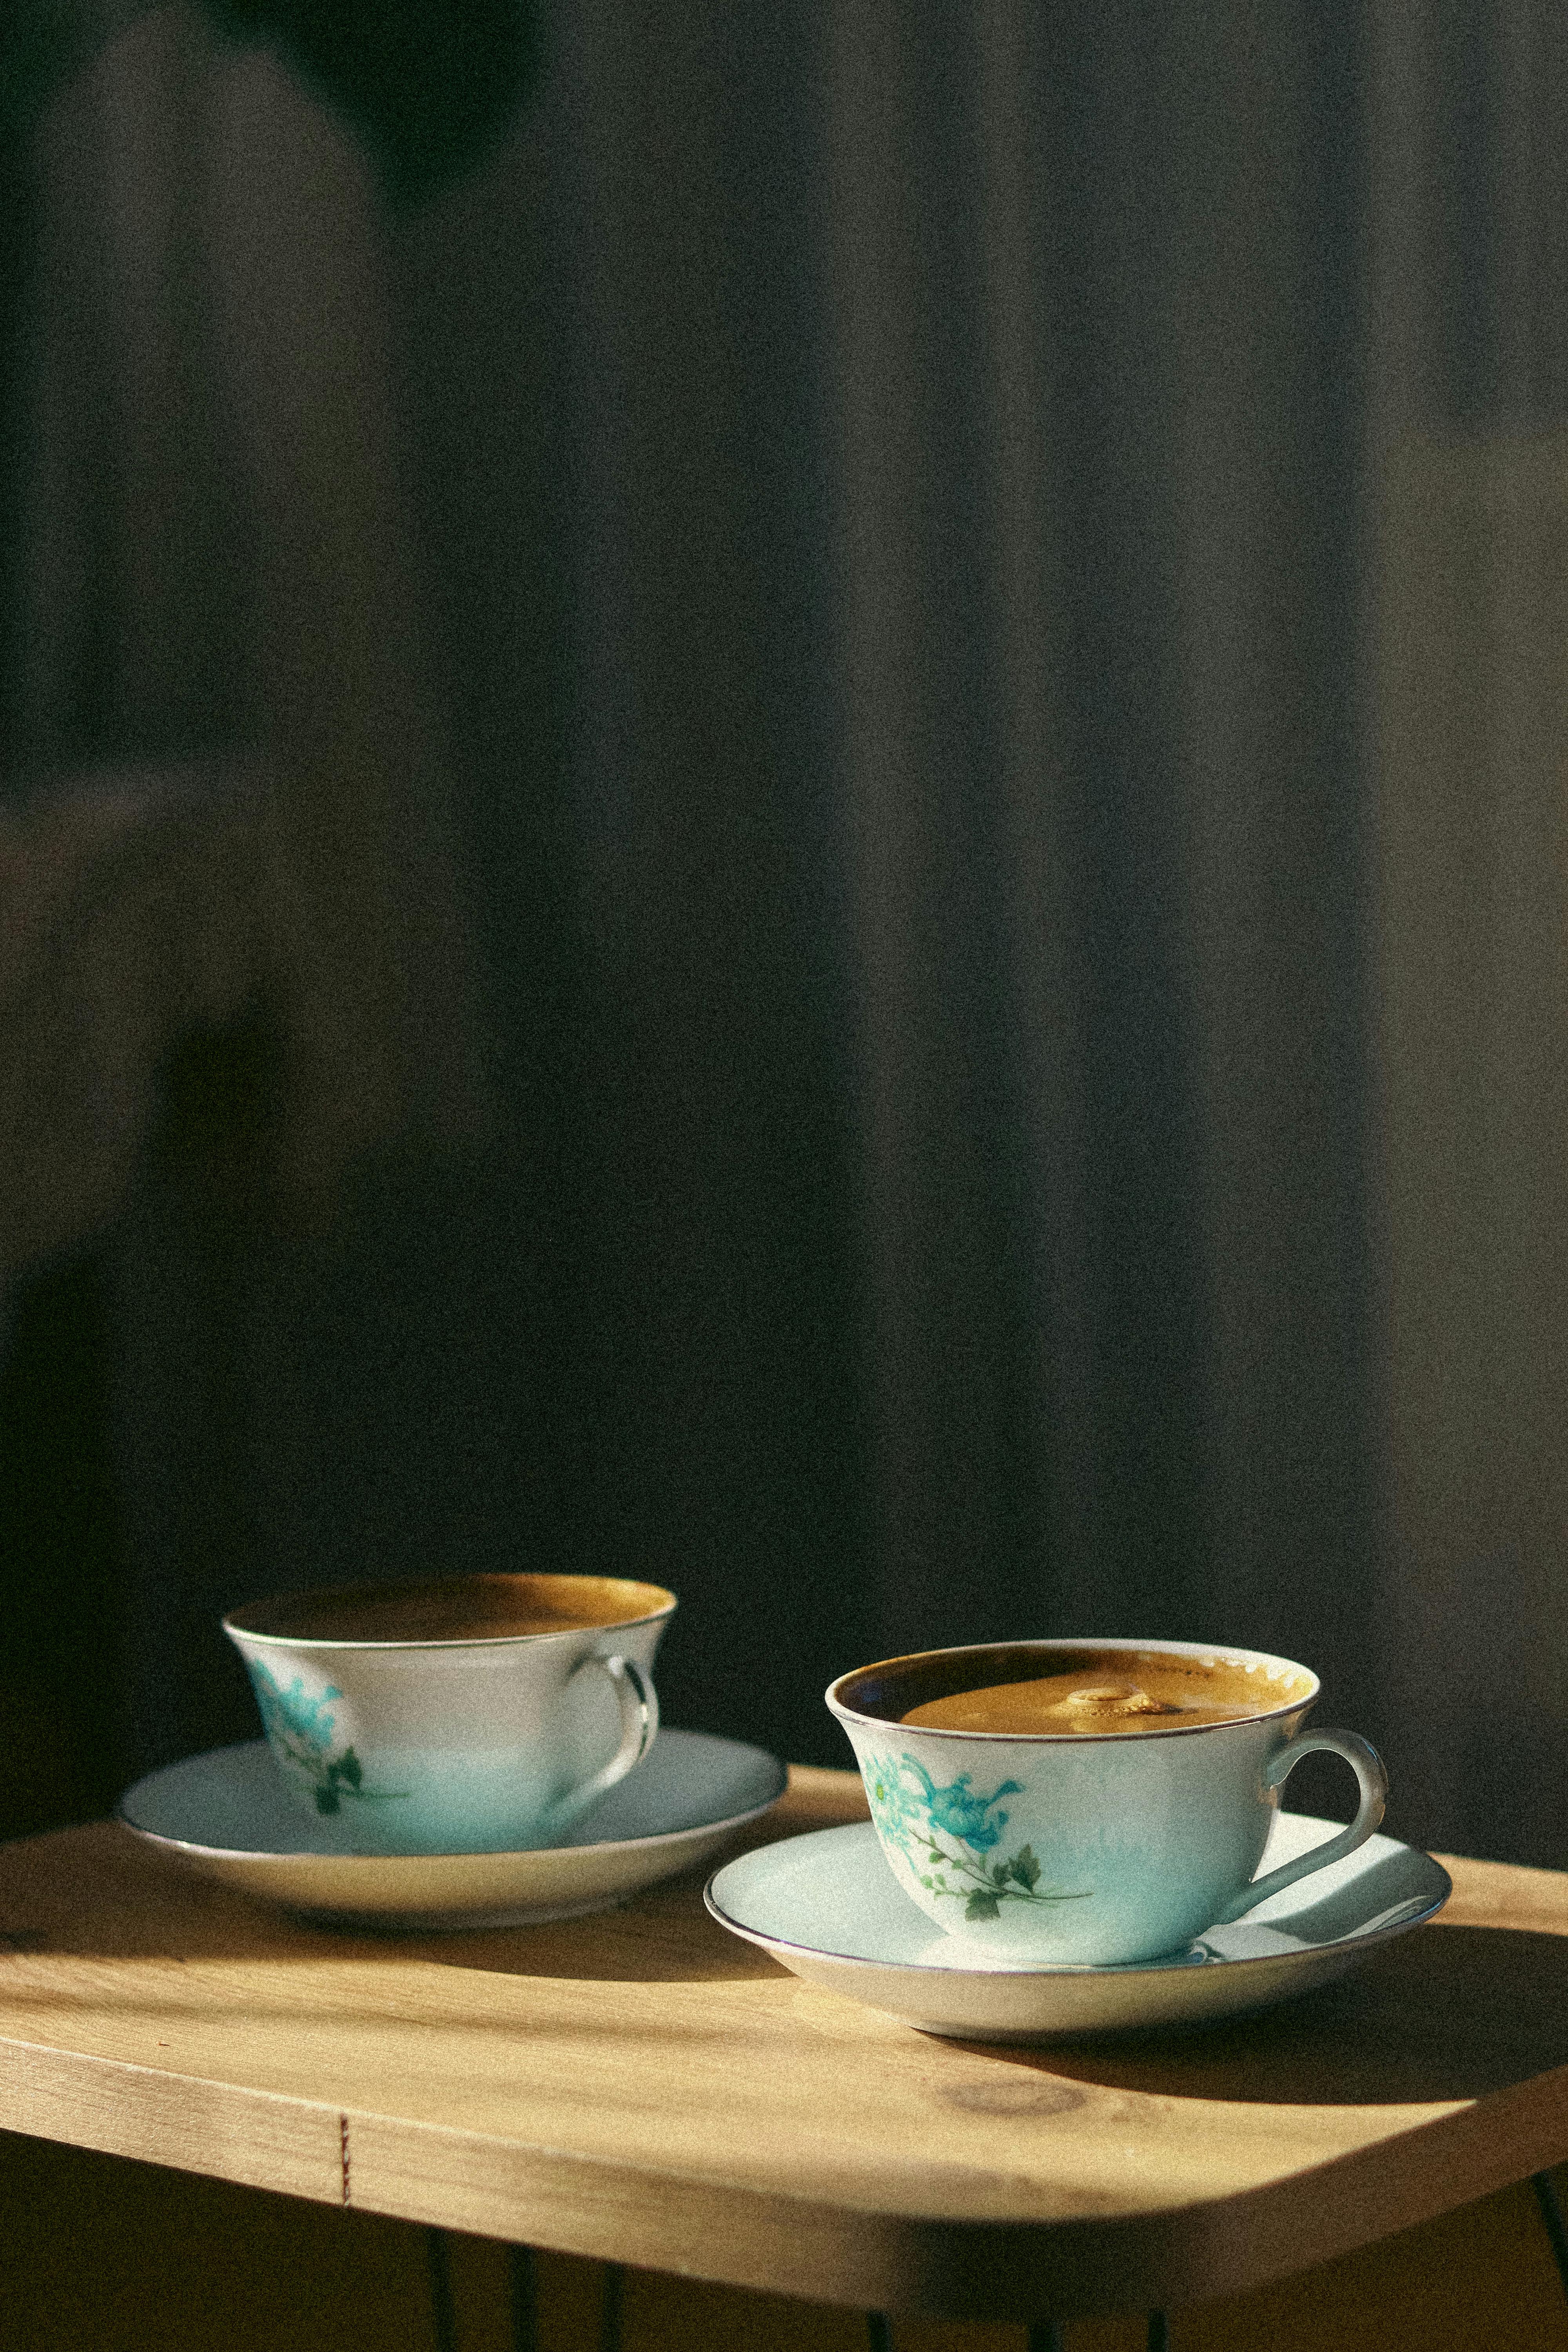 Deux tasses de café | Source : Pexels